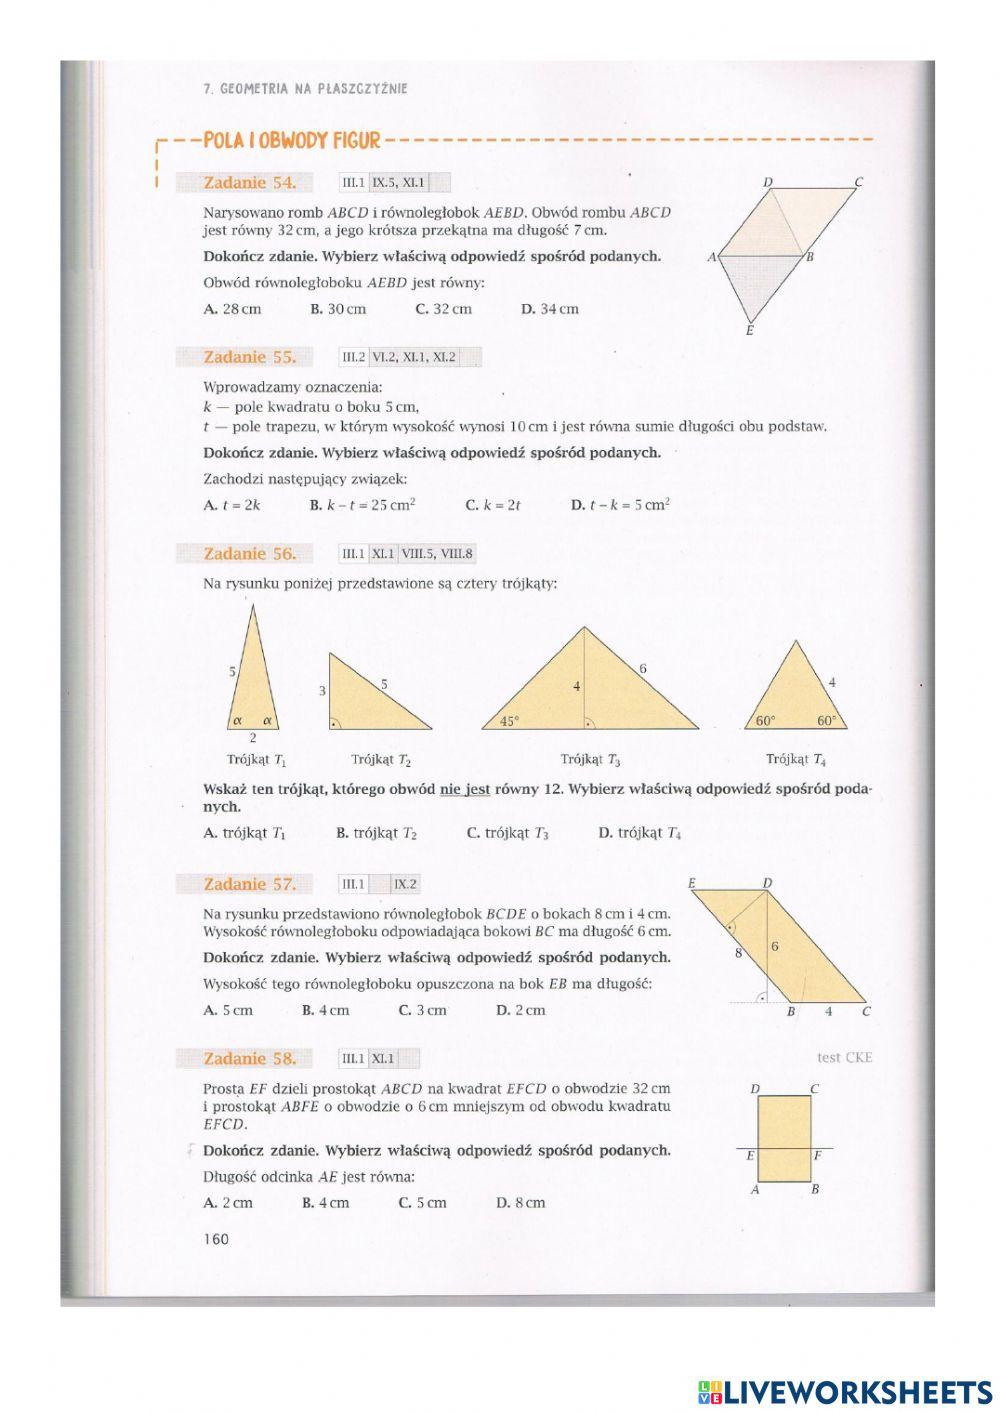 7.3 Geometria na płaszczyźnie - zadania  od 33 do 43